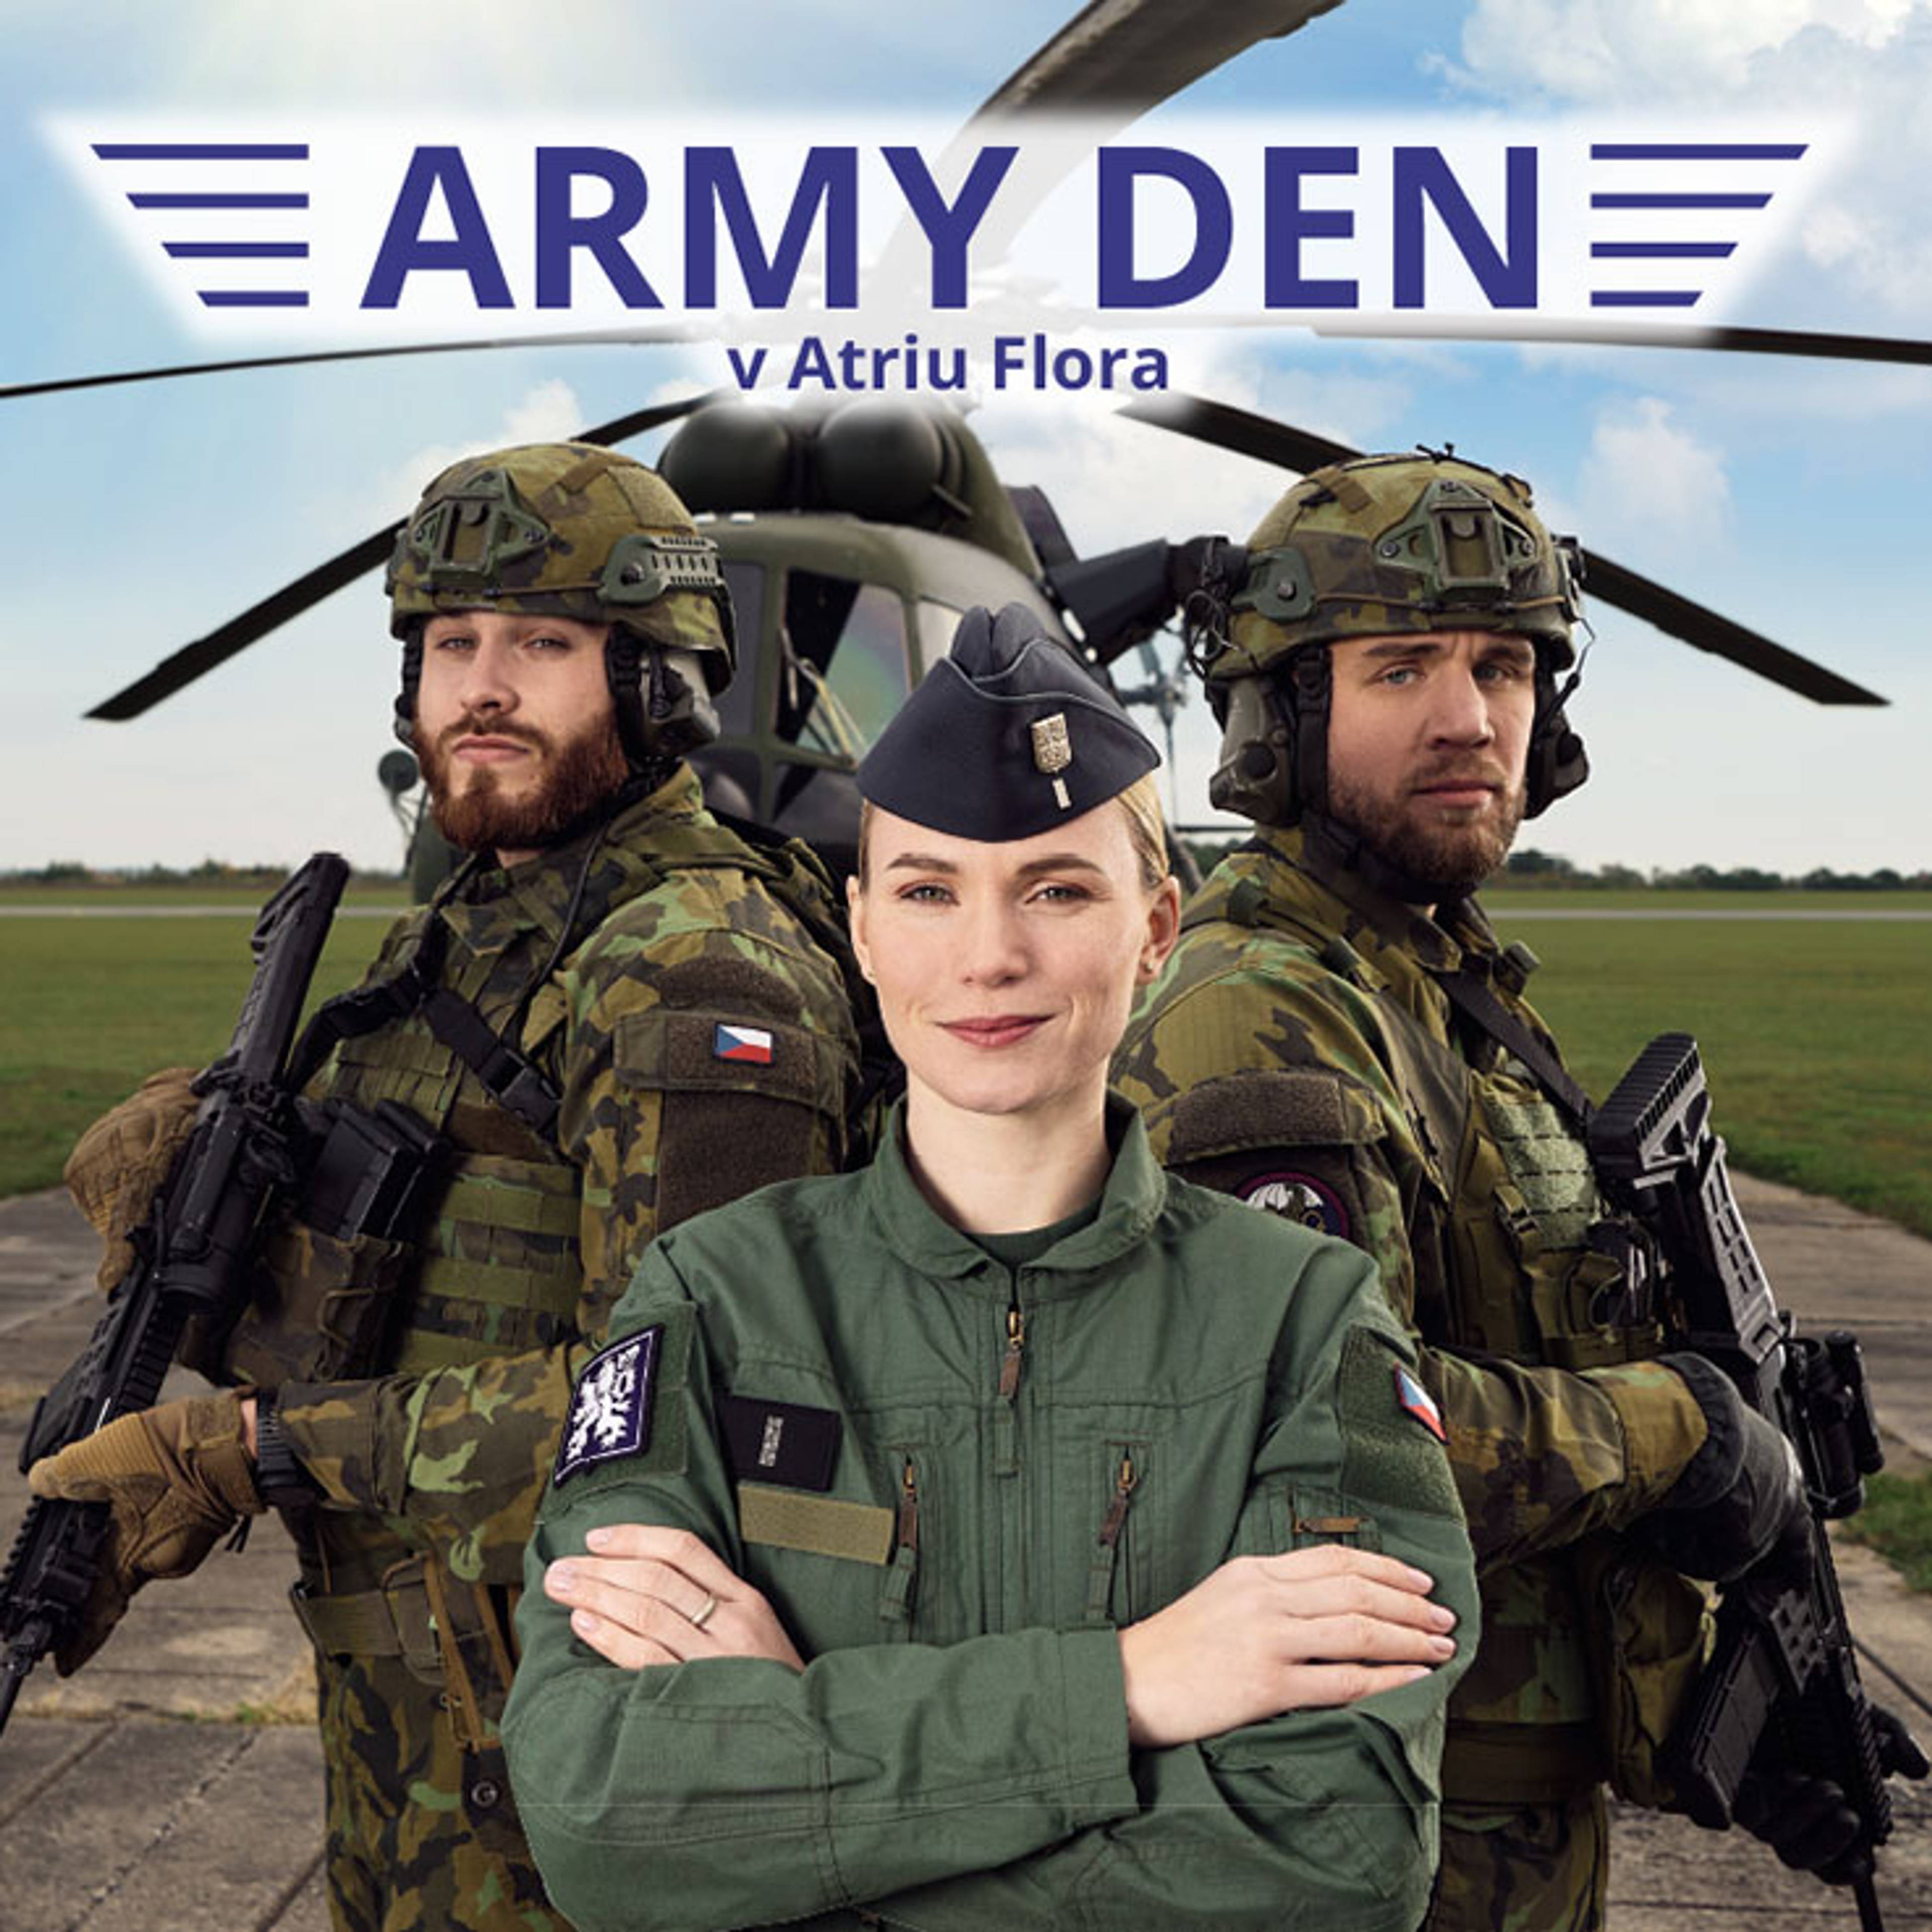 acr-naborove-akce-army-den-v-atriu-flora-738x738.jpg